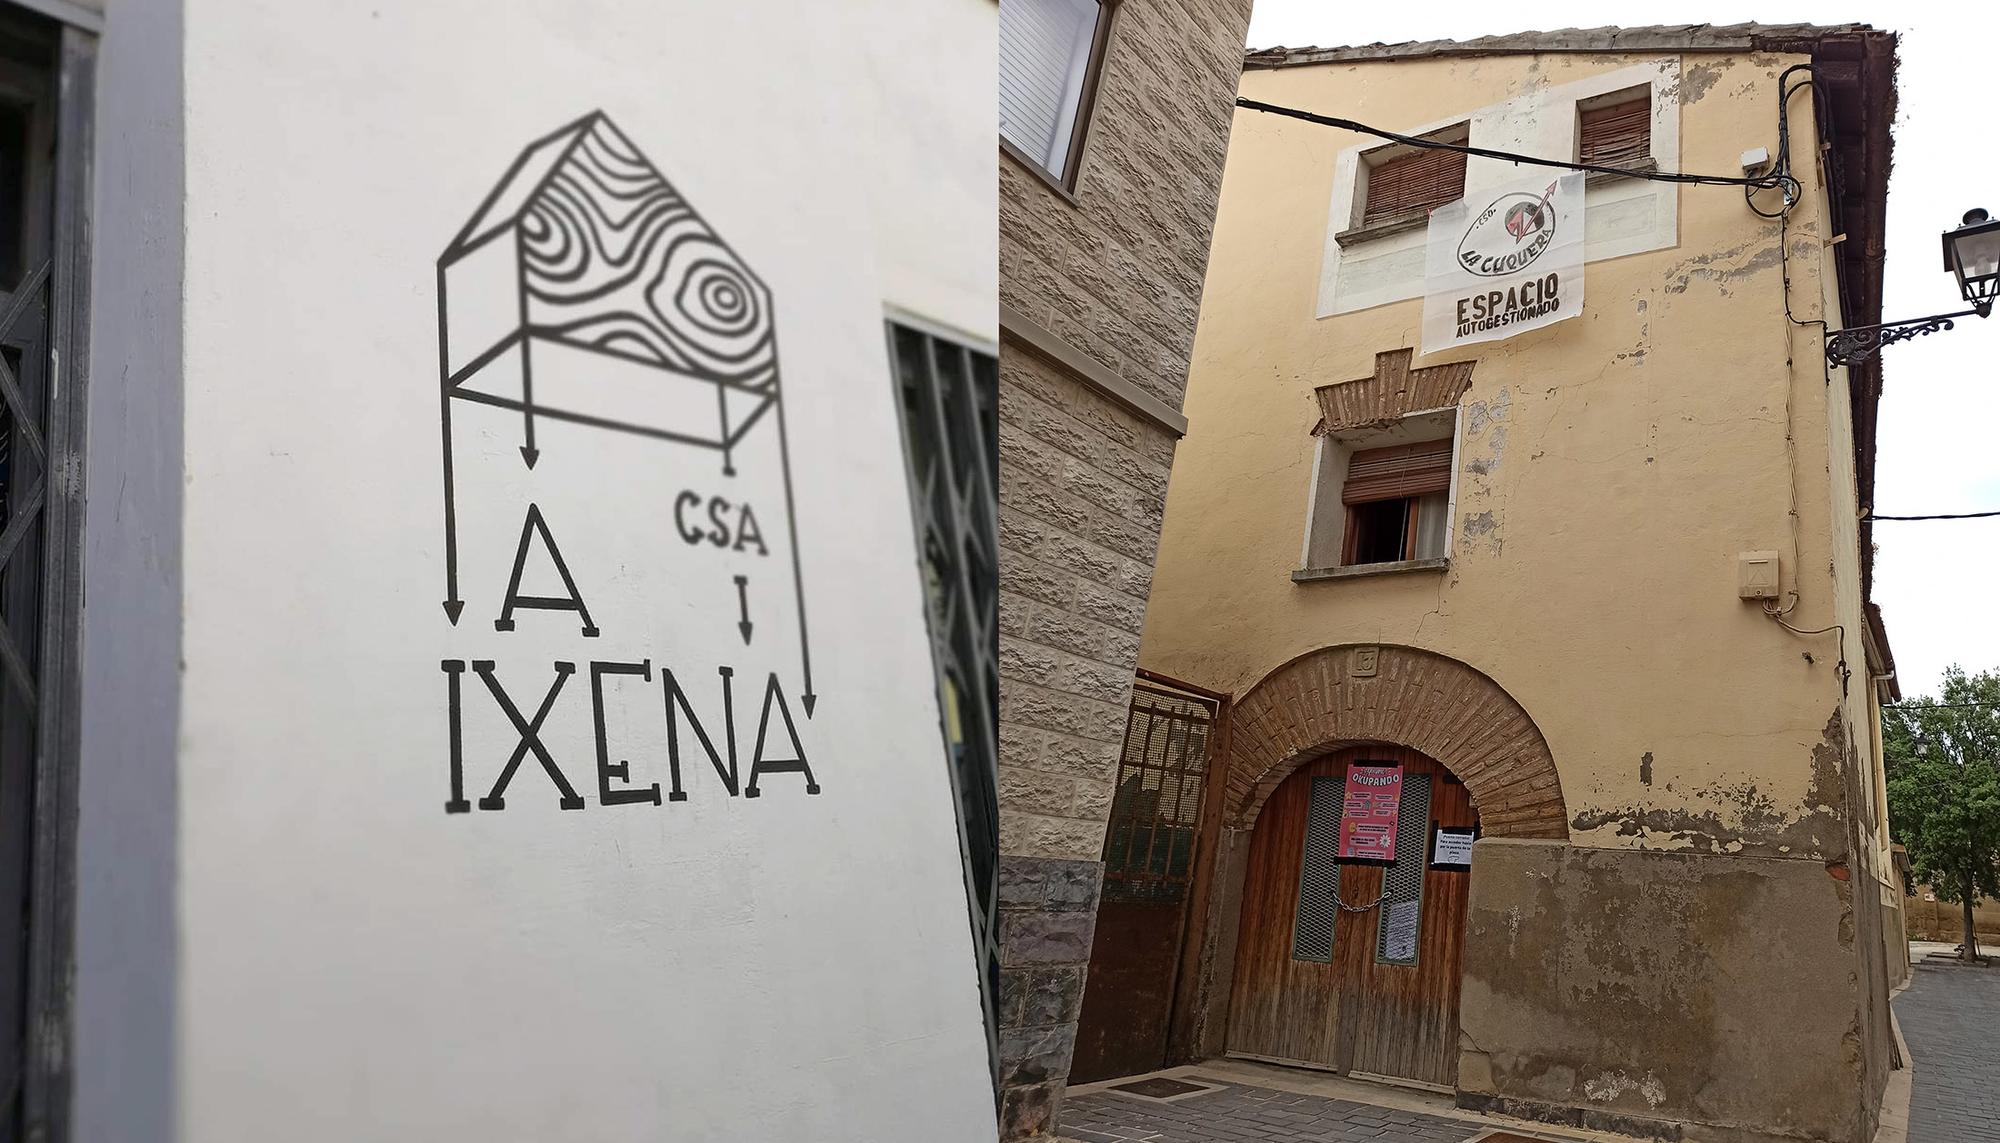 Centros sociales Aragon